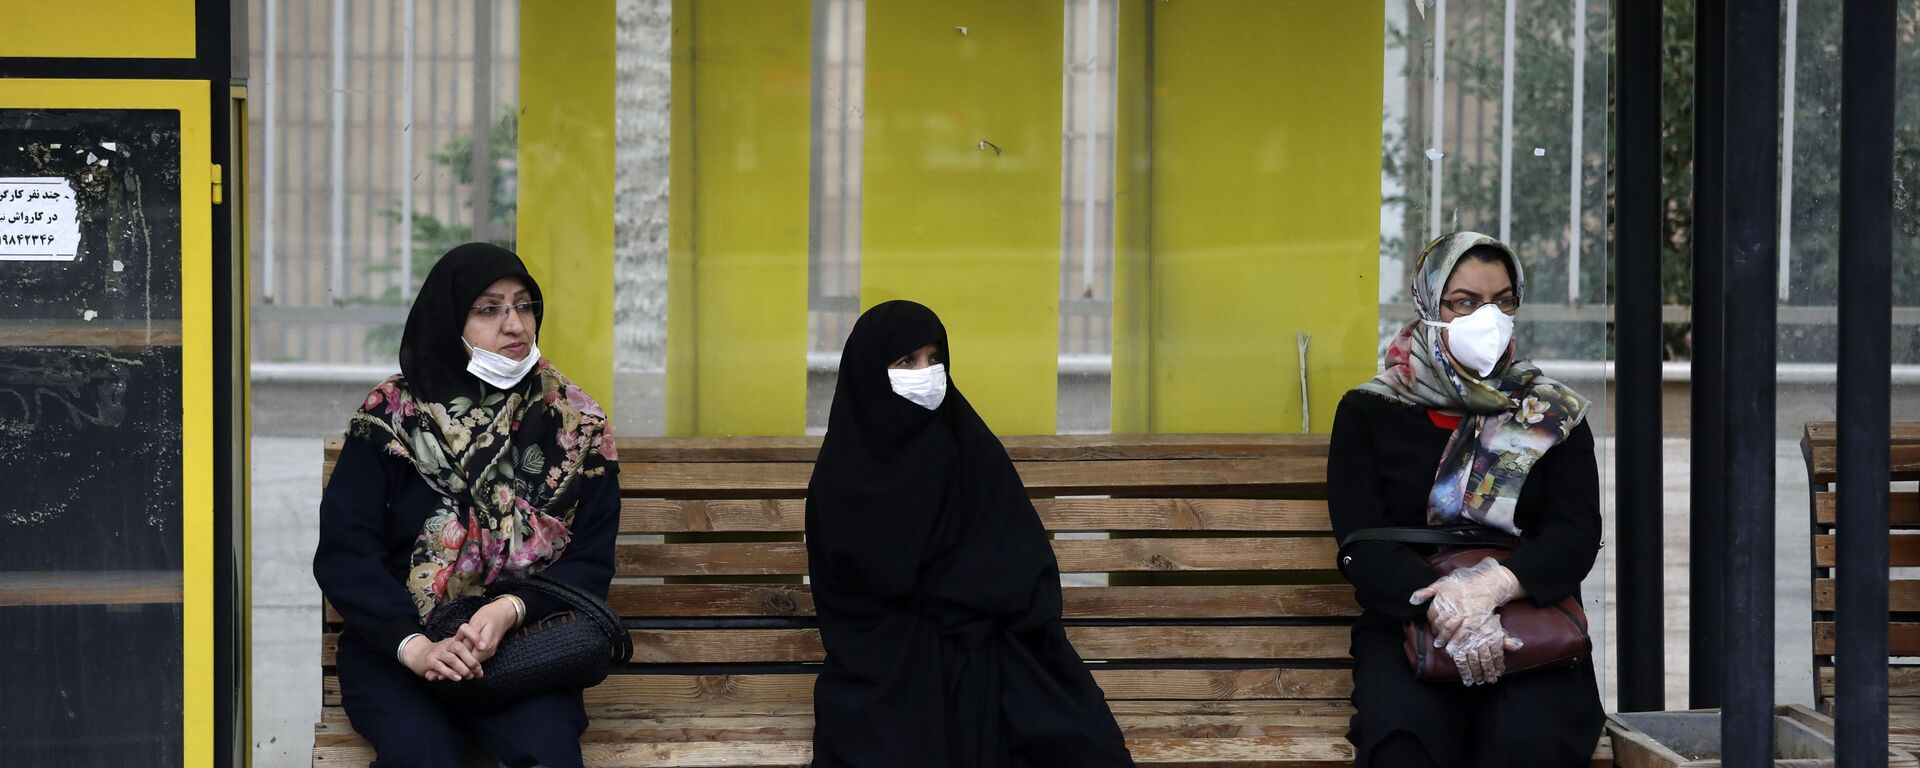 Иранские женщины сидят на автобусной остановке - Sputnik Тоҷикистон, 1920, 11.04.2021